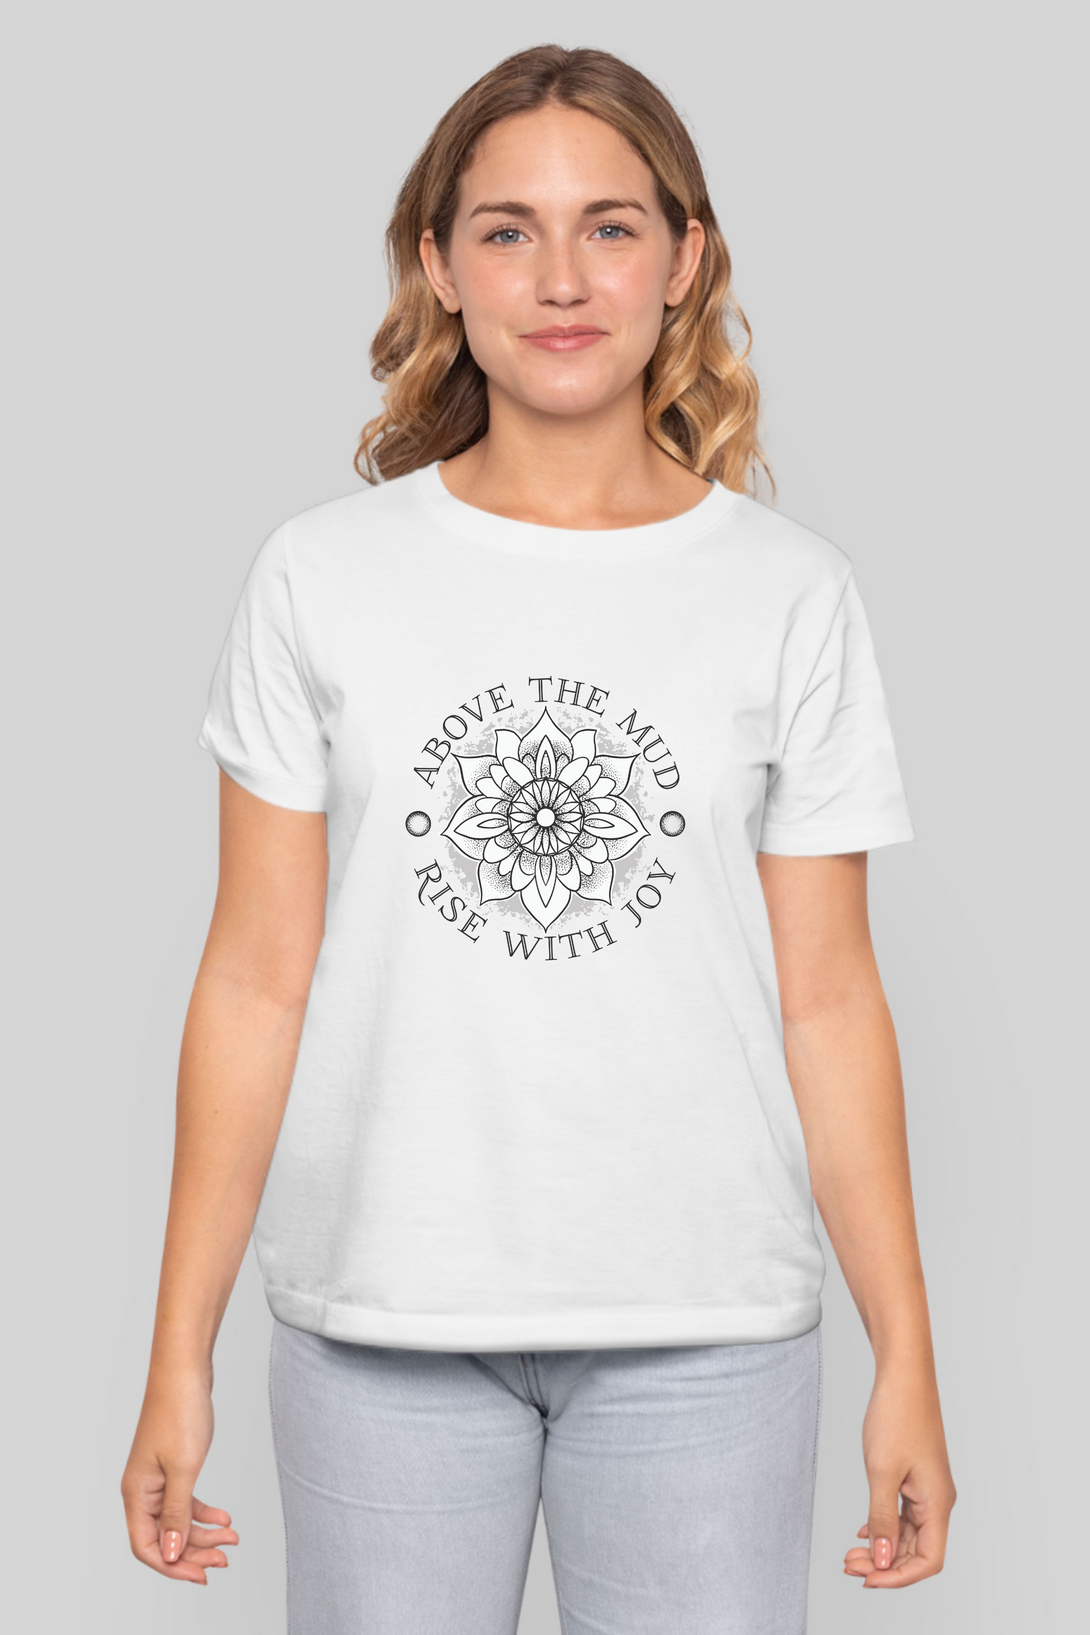 Mandala Lotus Printed T-Shirt For Women - WowWaves - 6